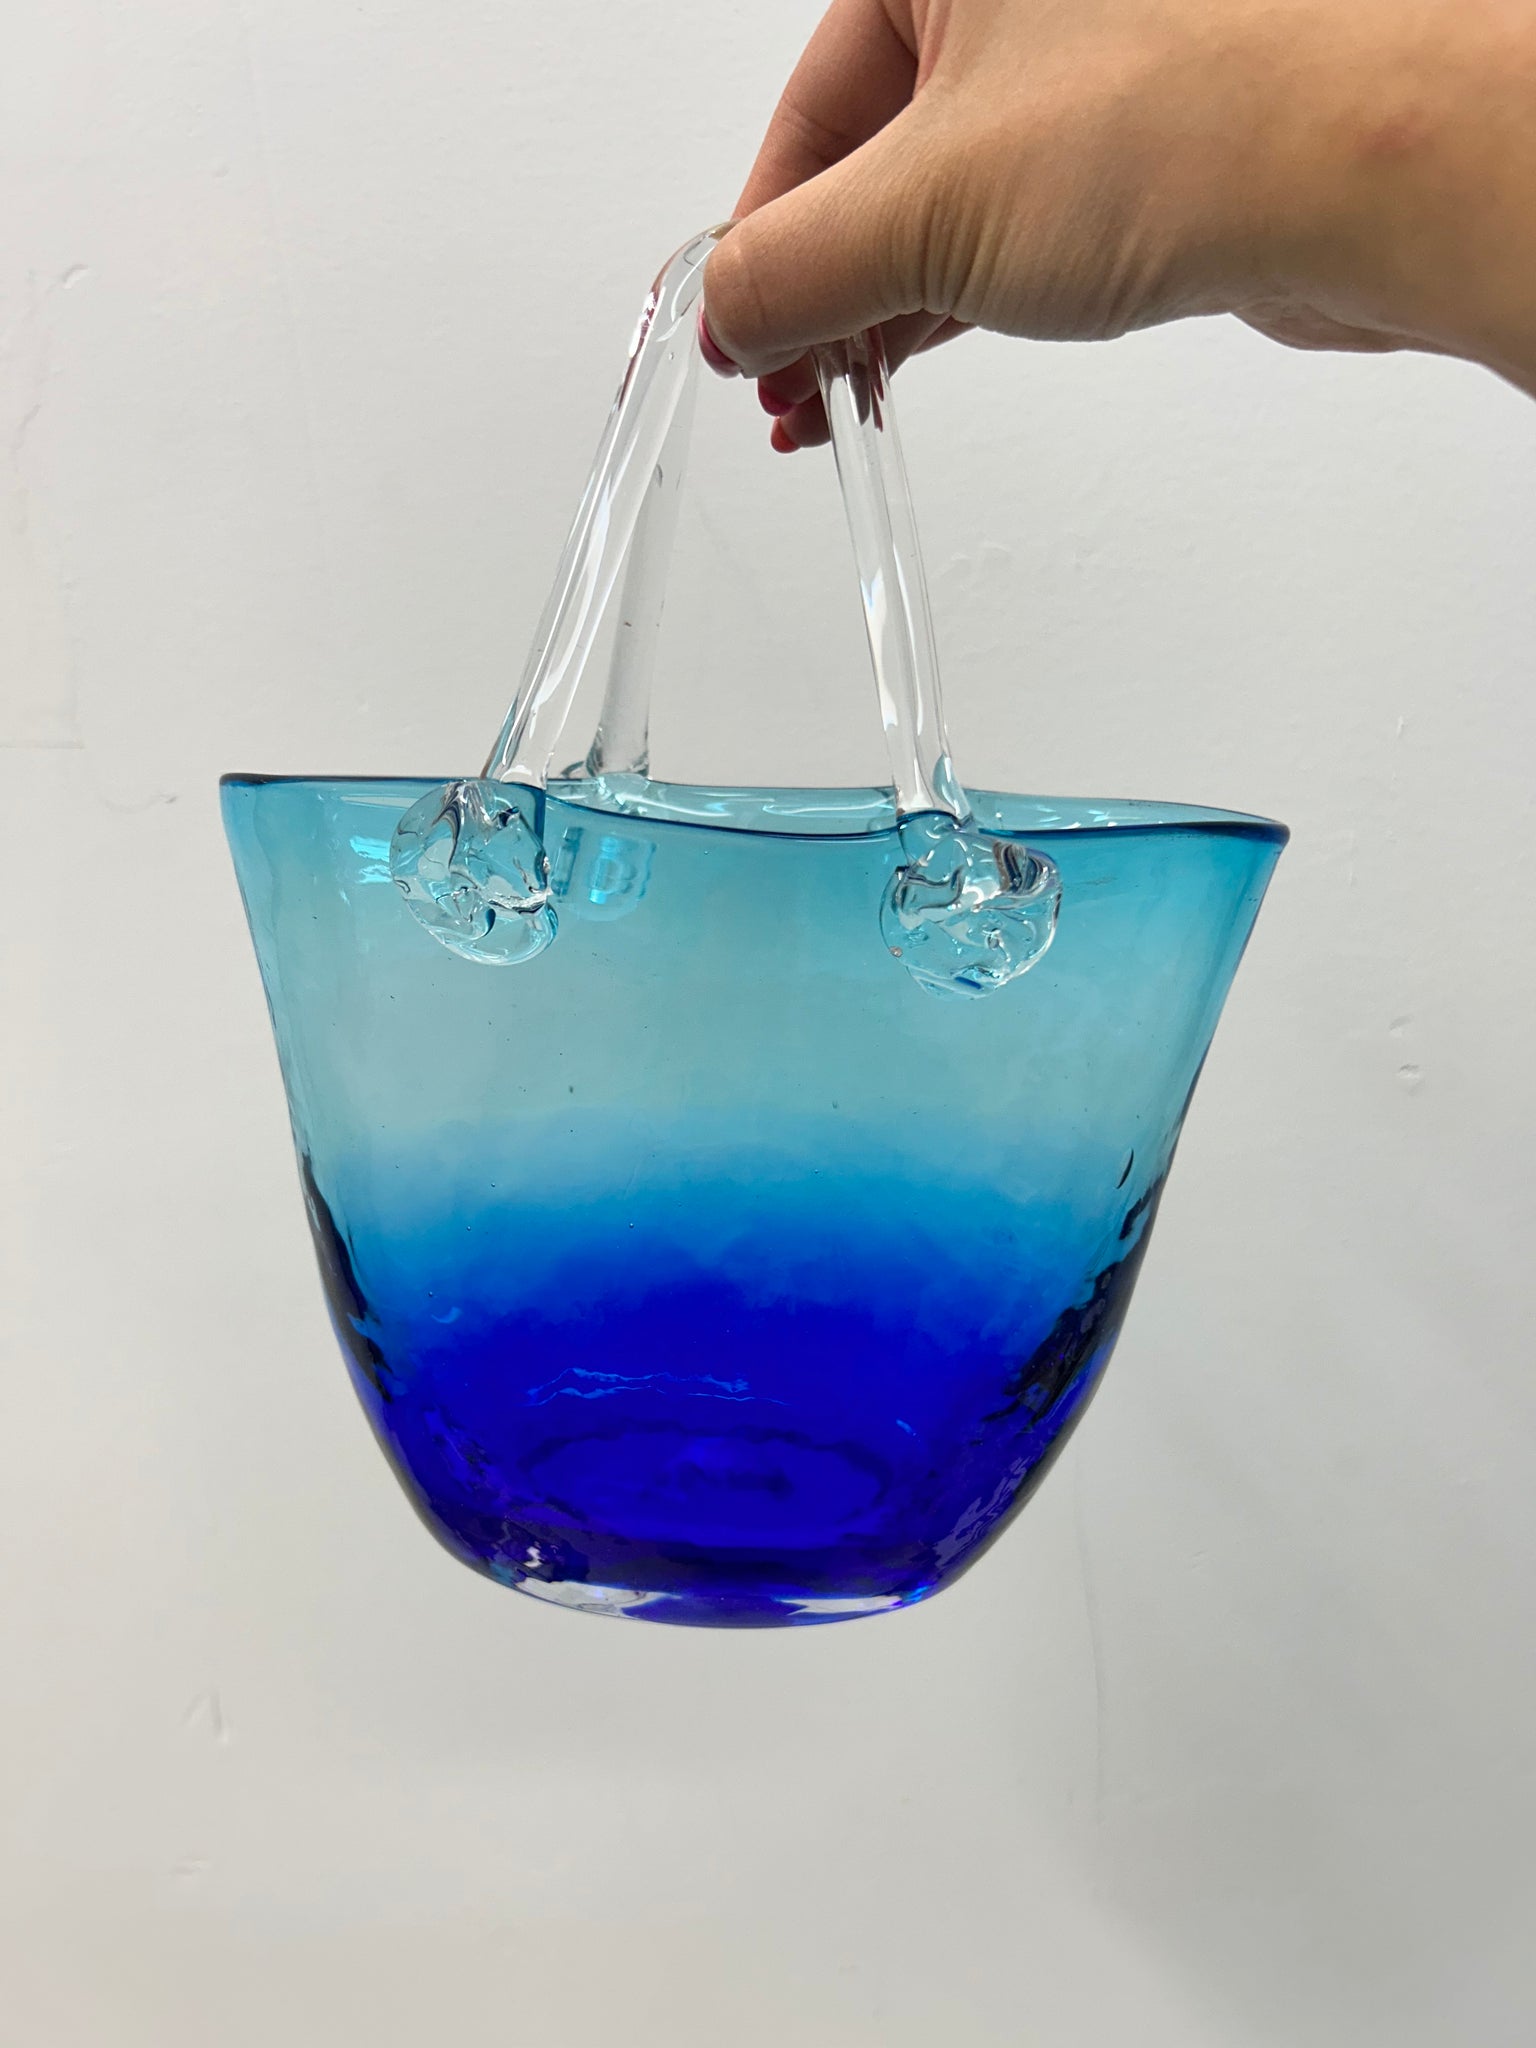 Blue ombre Murano glass style purse vase